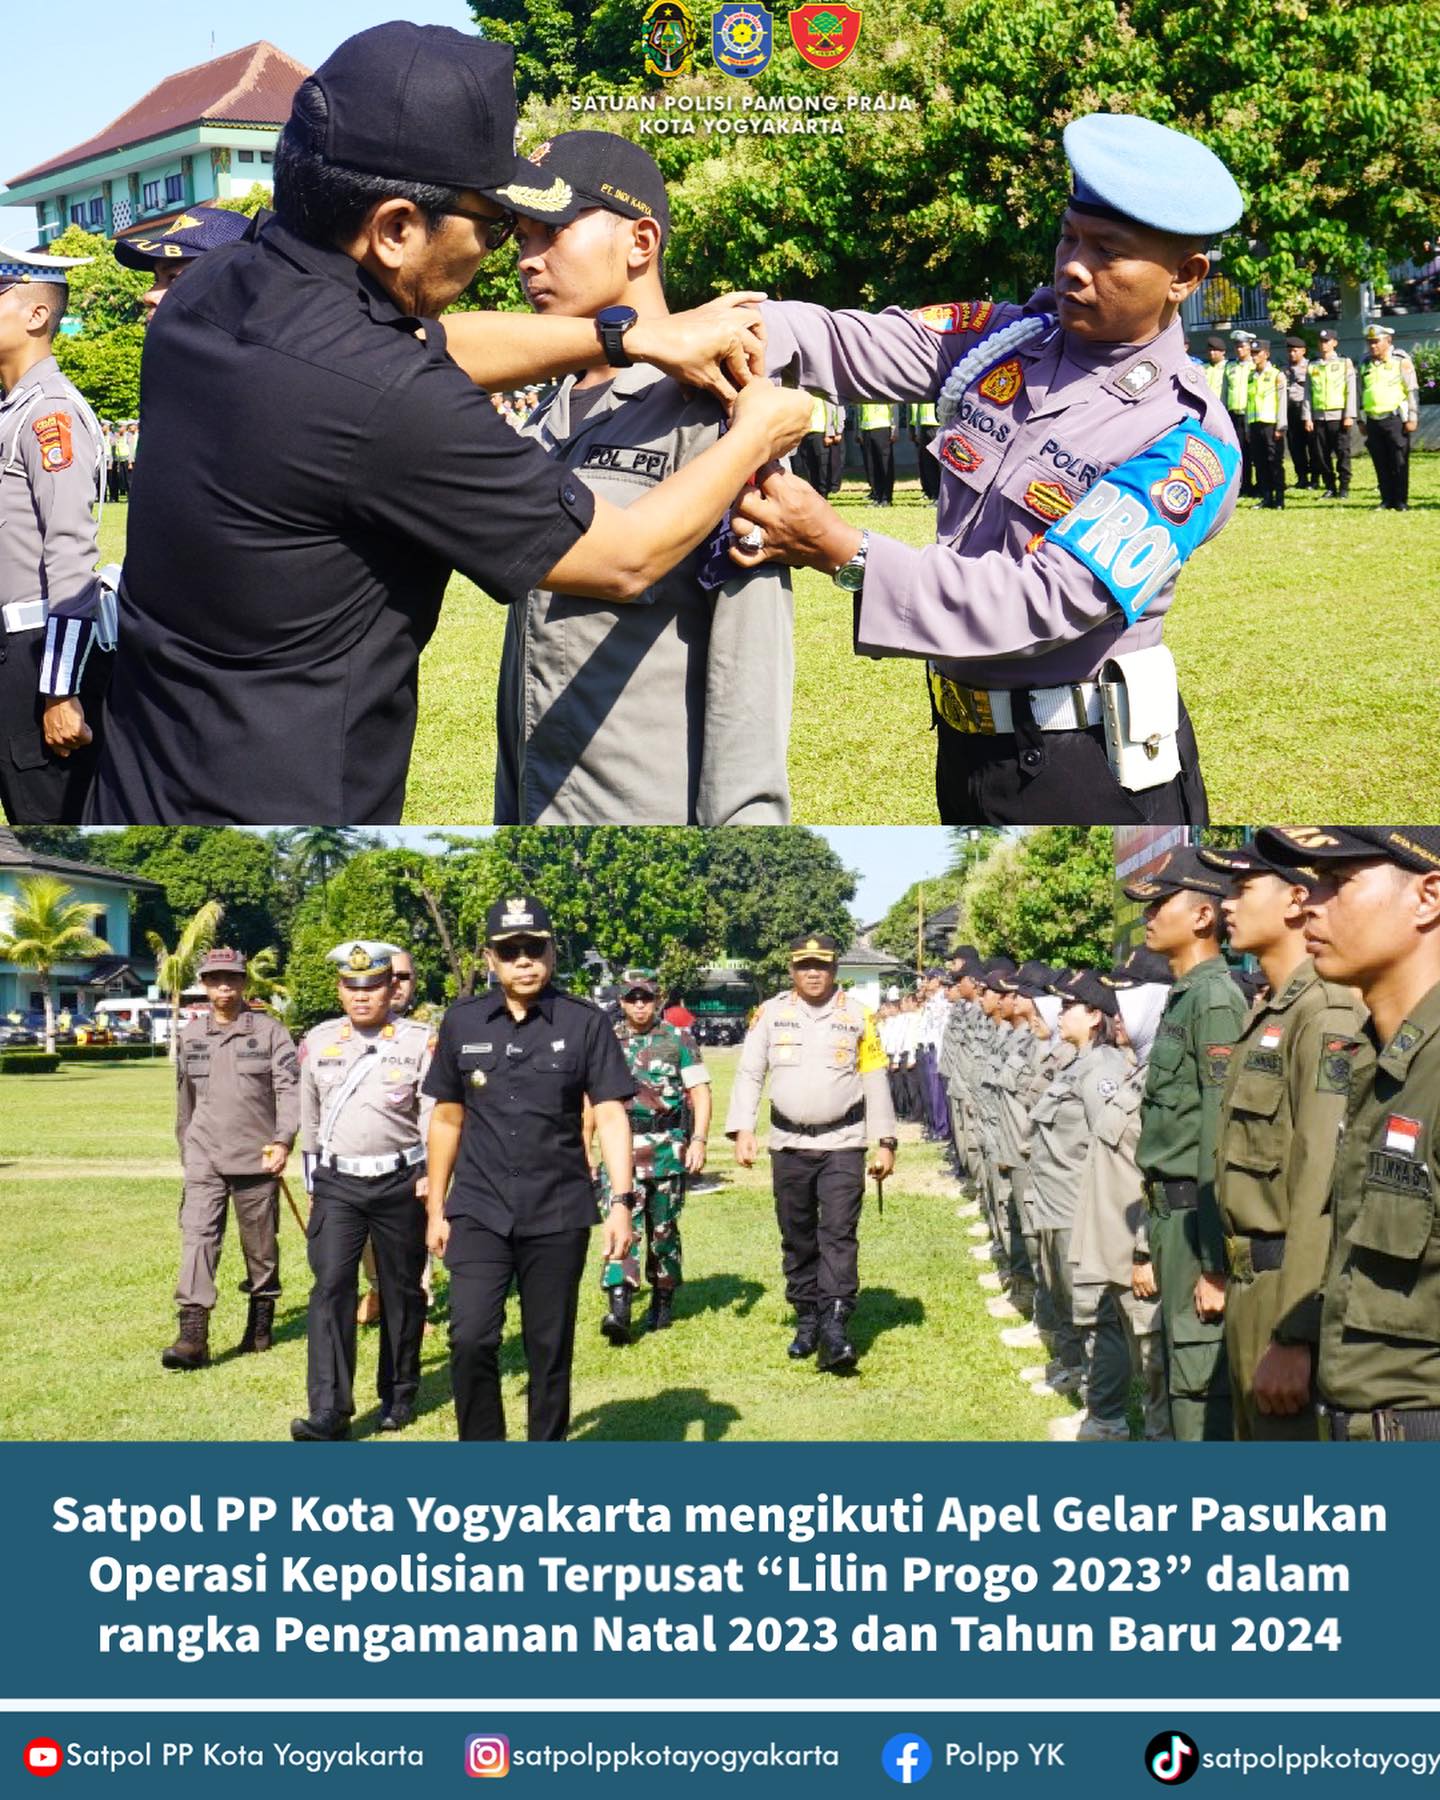 Satpol PP Kota Yogyakarta Mengikuti Apel Gelar Pasukan Operasi Kepolisian Terpusat “Lilin Progo 2023”